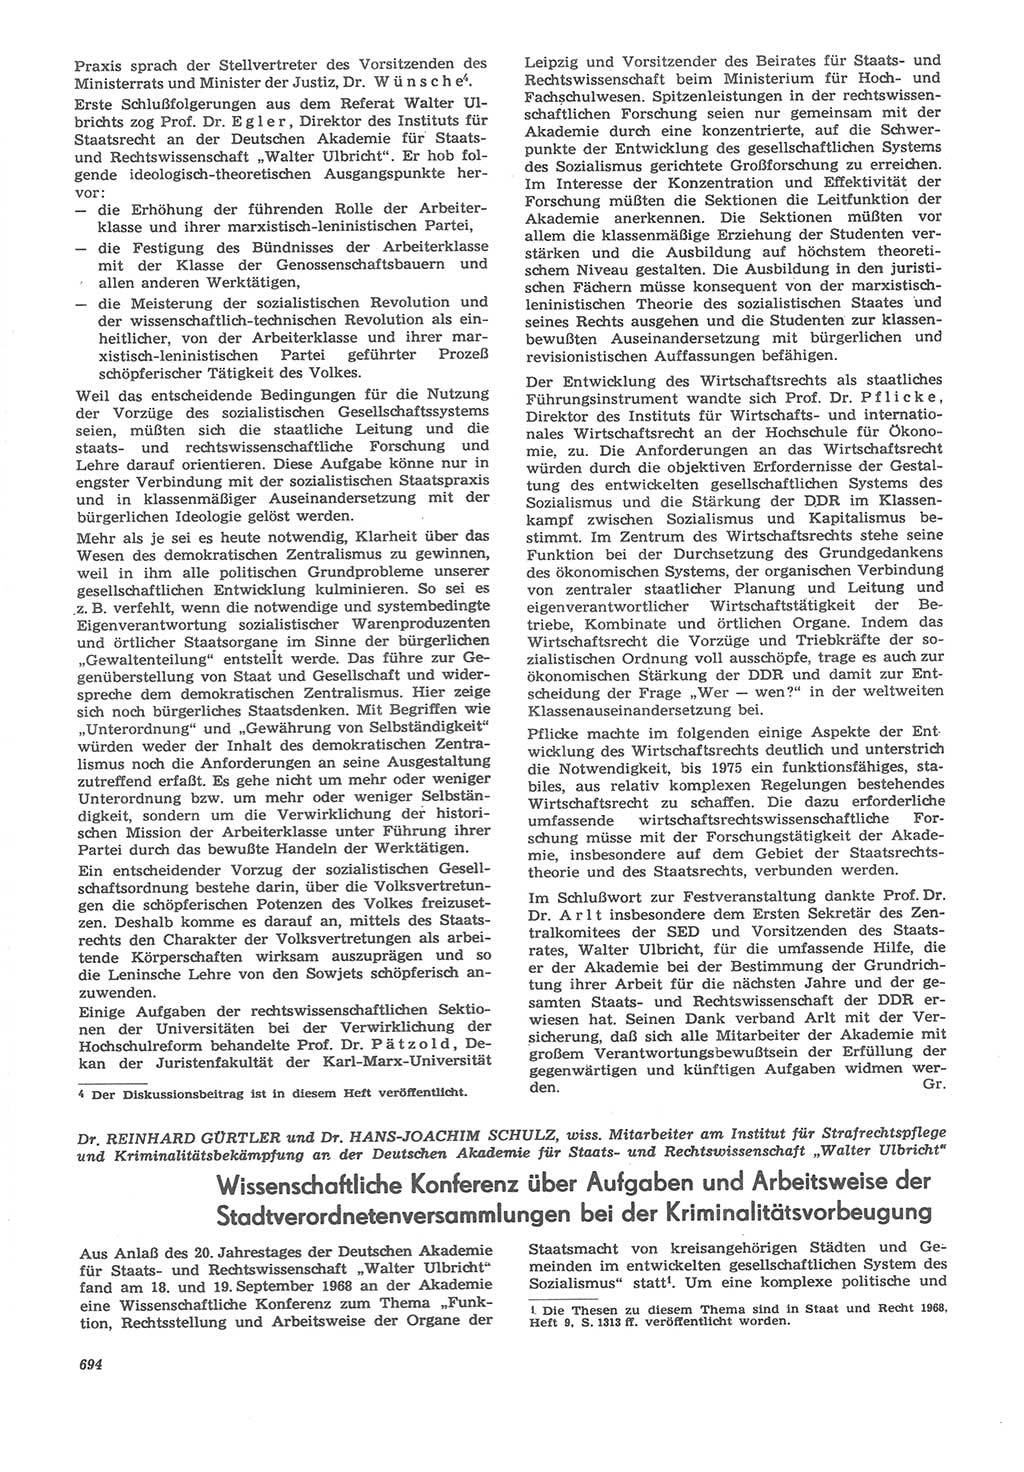 Neue Justiz (NJ), Zeitschrift für Recht und Rechtswissenschaft [Deutsche Demokratische Republik (DDR)], 22. Jahrgang 1968, Seite 694 (NJ DDR 1968, S. 694)